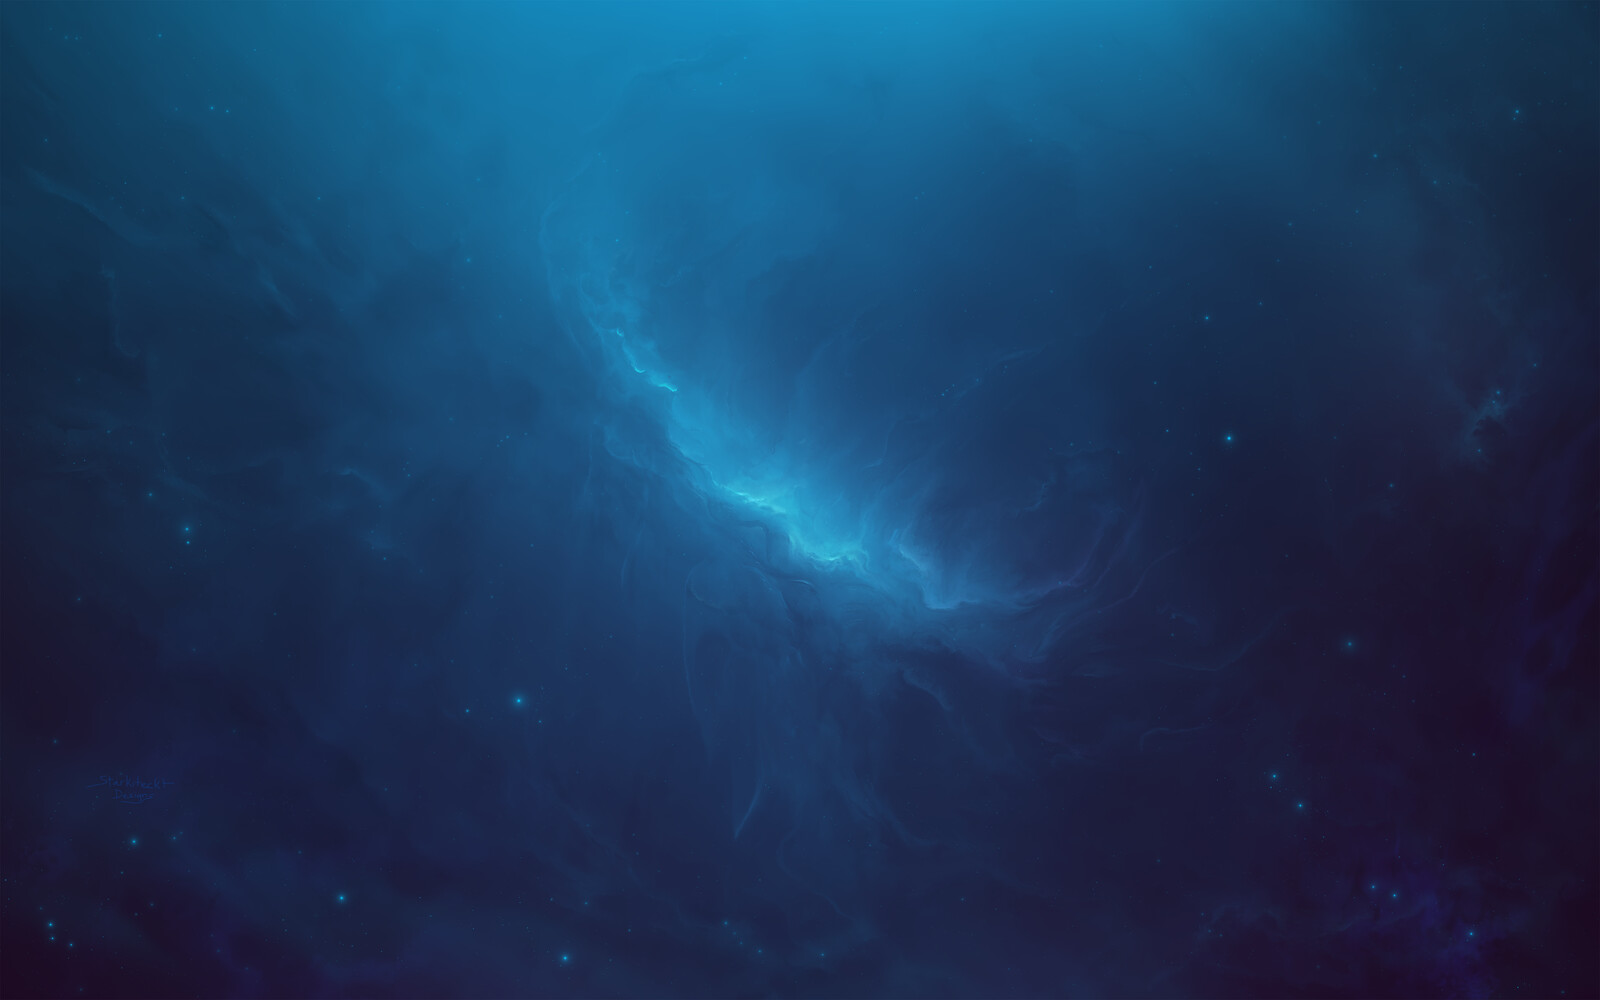 Akrae Nebula